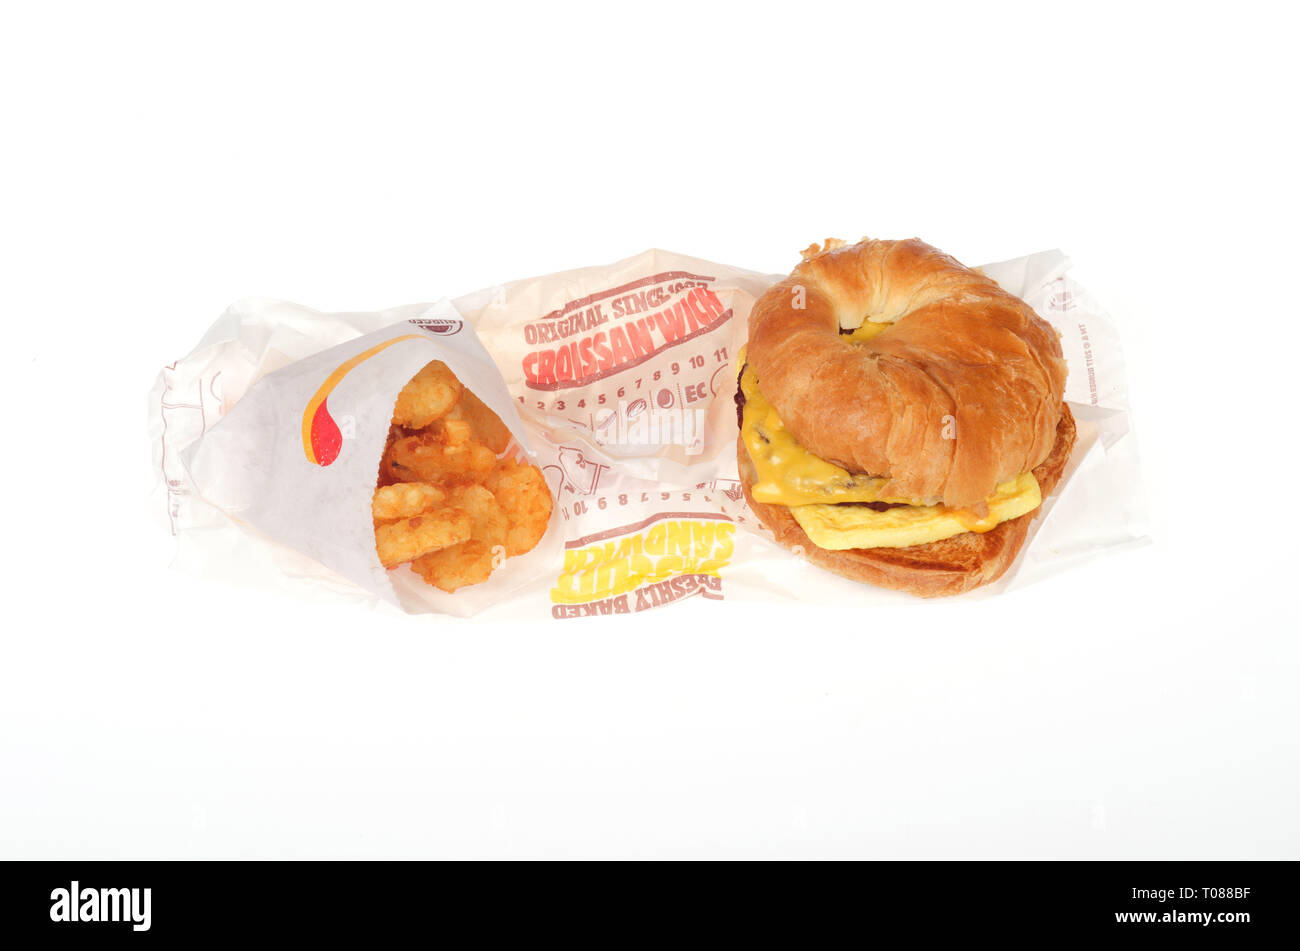 Burger King salsiccia, uova e formaggio Croissan"quale hash e marroni con involucri su sfondo bianco Foto Stock